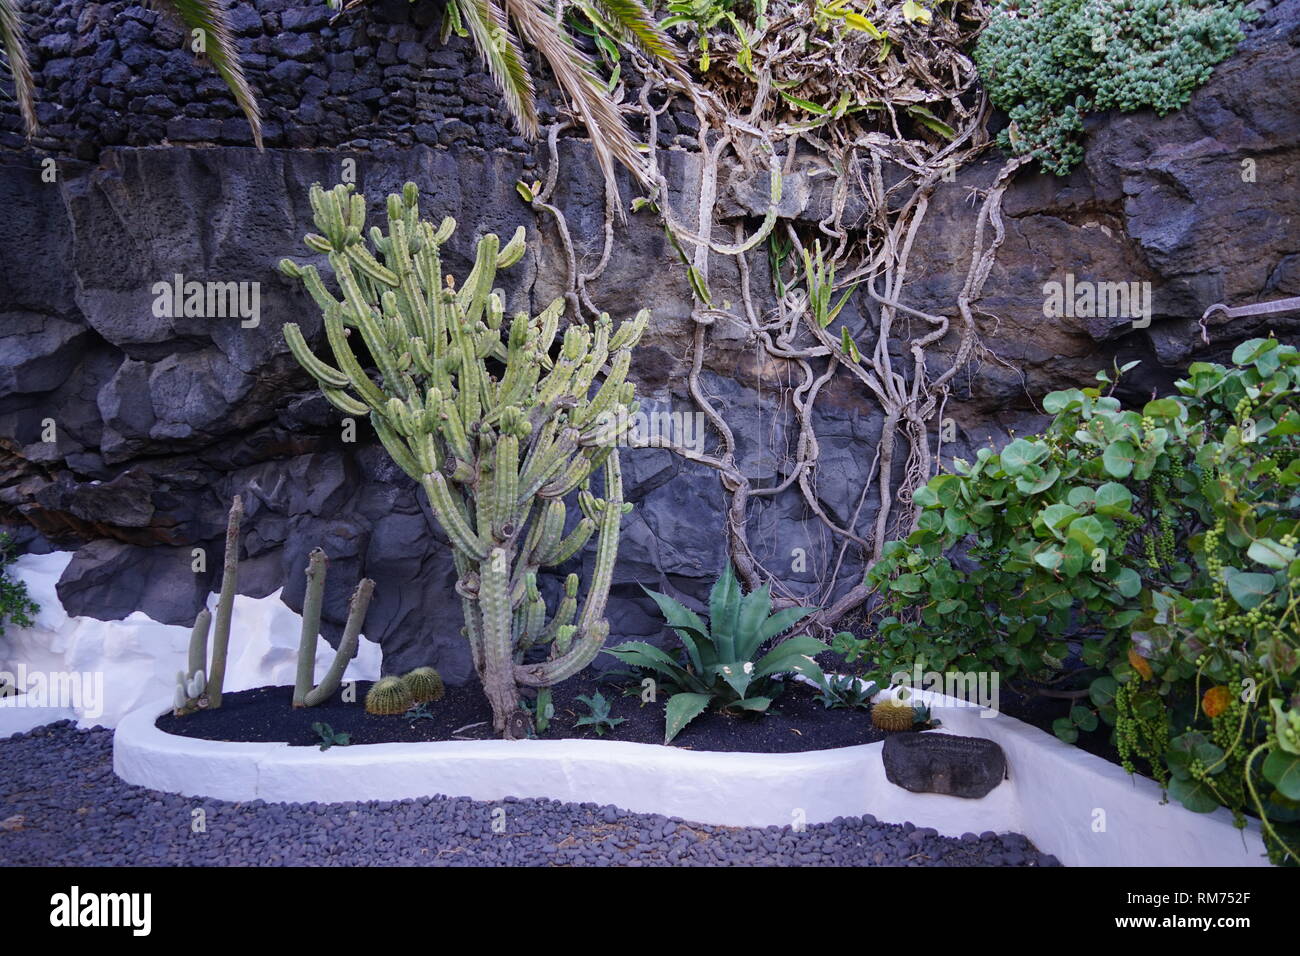 Pflanzen neben dem Schwimmbecken,Vulkanhaus, Fundación César Manrique,  Vulkan und Architektur, Museum, Tahiche, Lanzarote, Kanarische Inseln, Spanien Stock Photo